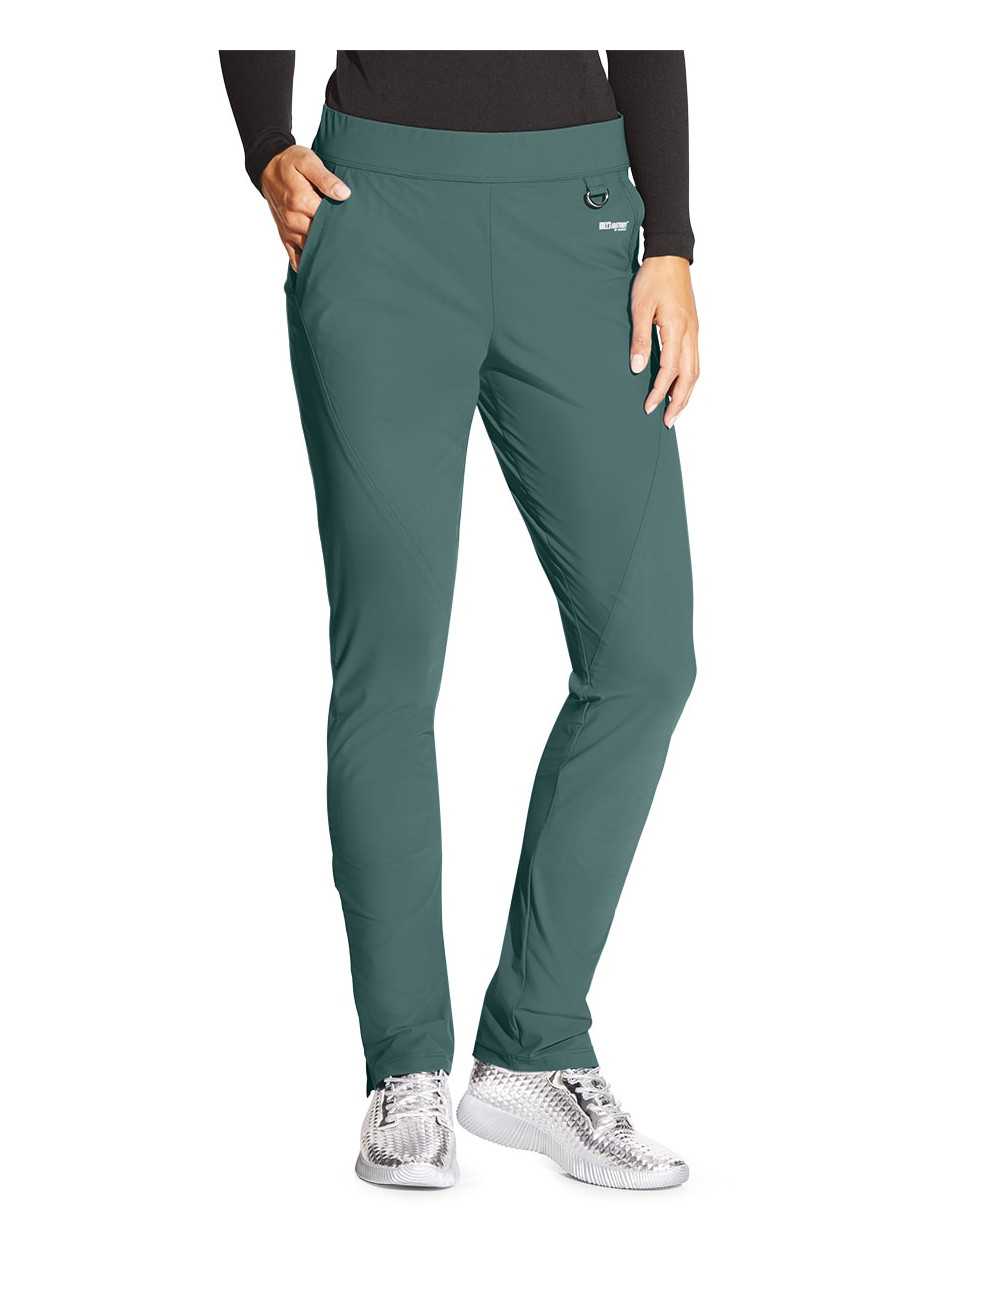 Pantalon médical femme, couleur vert olive vue de face, collection "Grey's Anatomy Edge" (GEP005-)